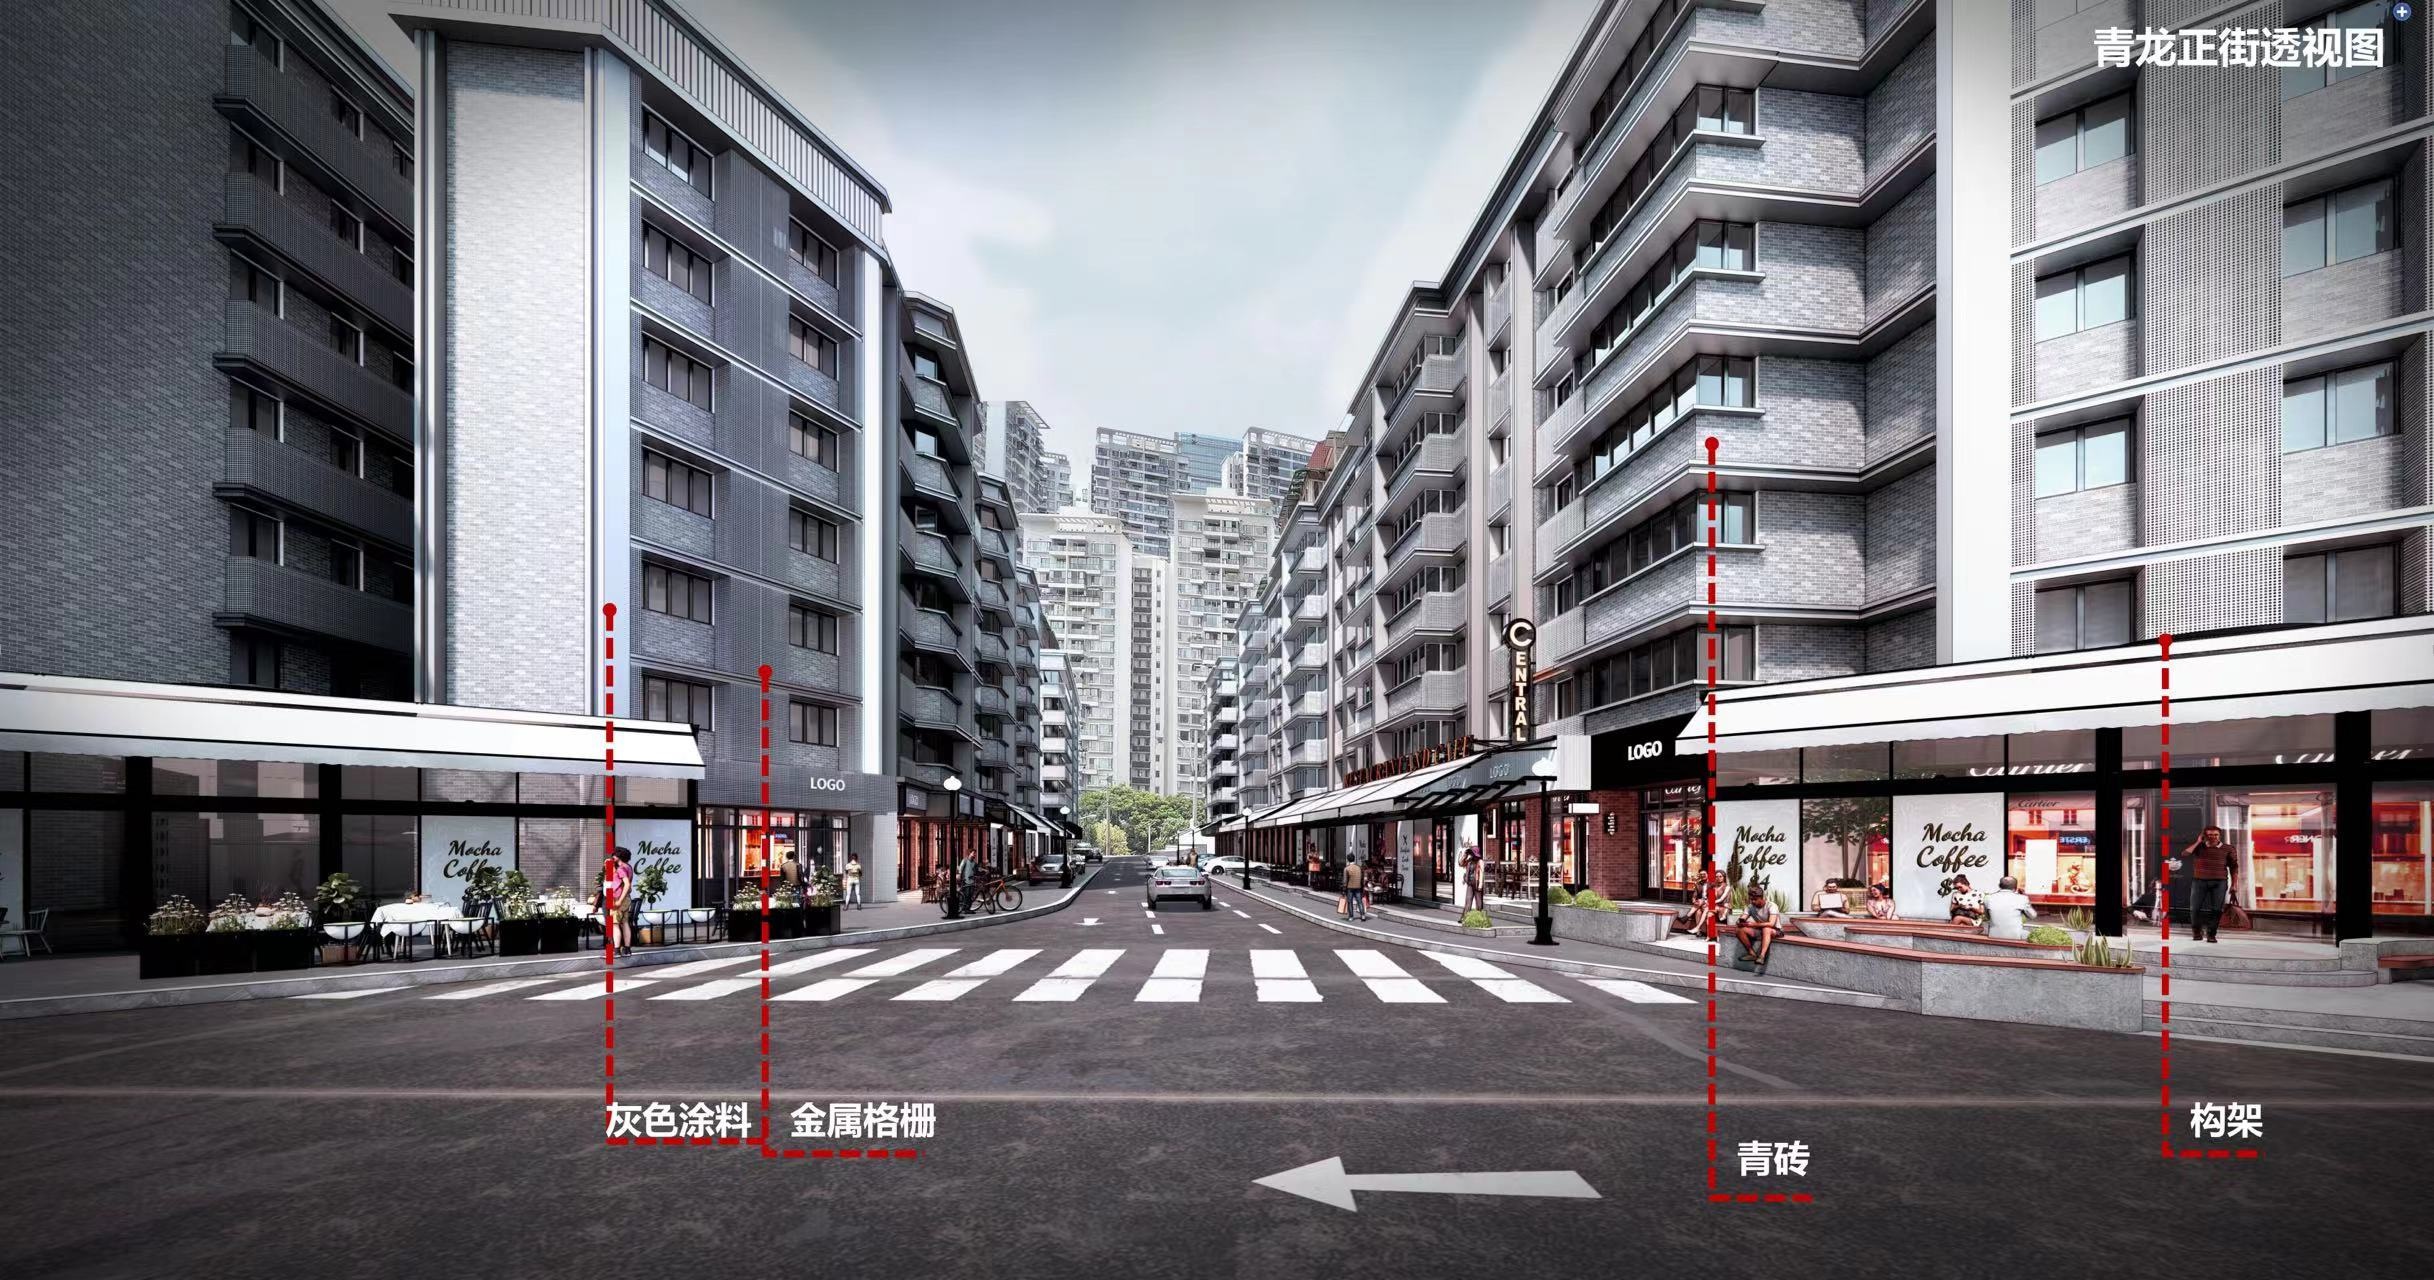 成都将打造一批最成都的风貌街道 这条老街已经开始换新颜 啦!